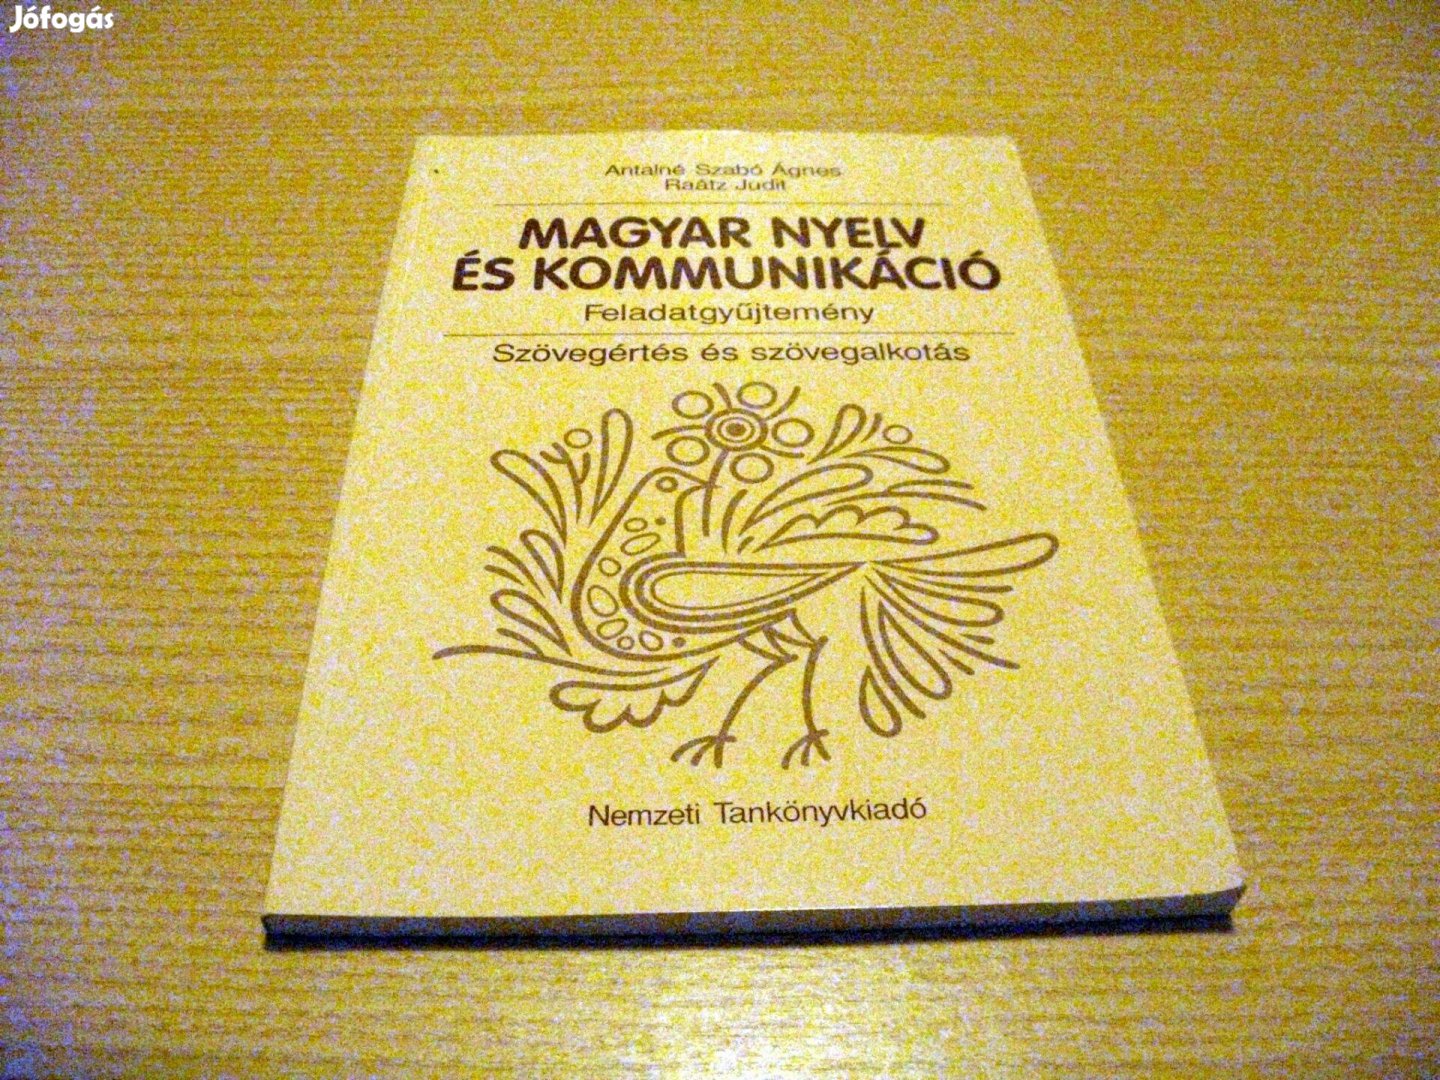 Magyar nyelv és kommunikáció feladatgyűjtemény, 1-12. oszt